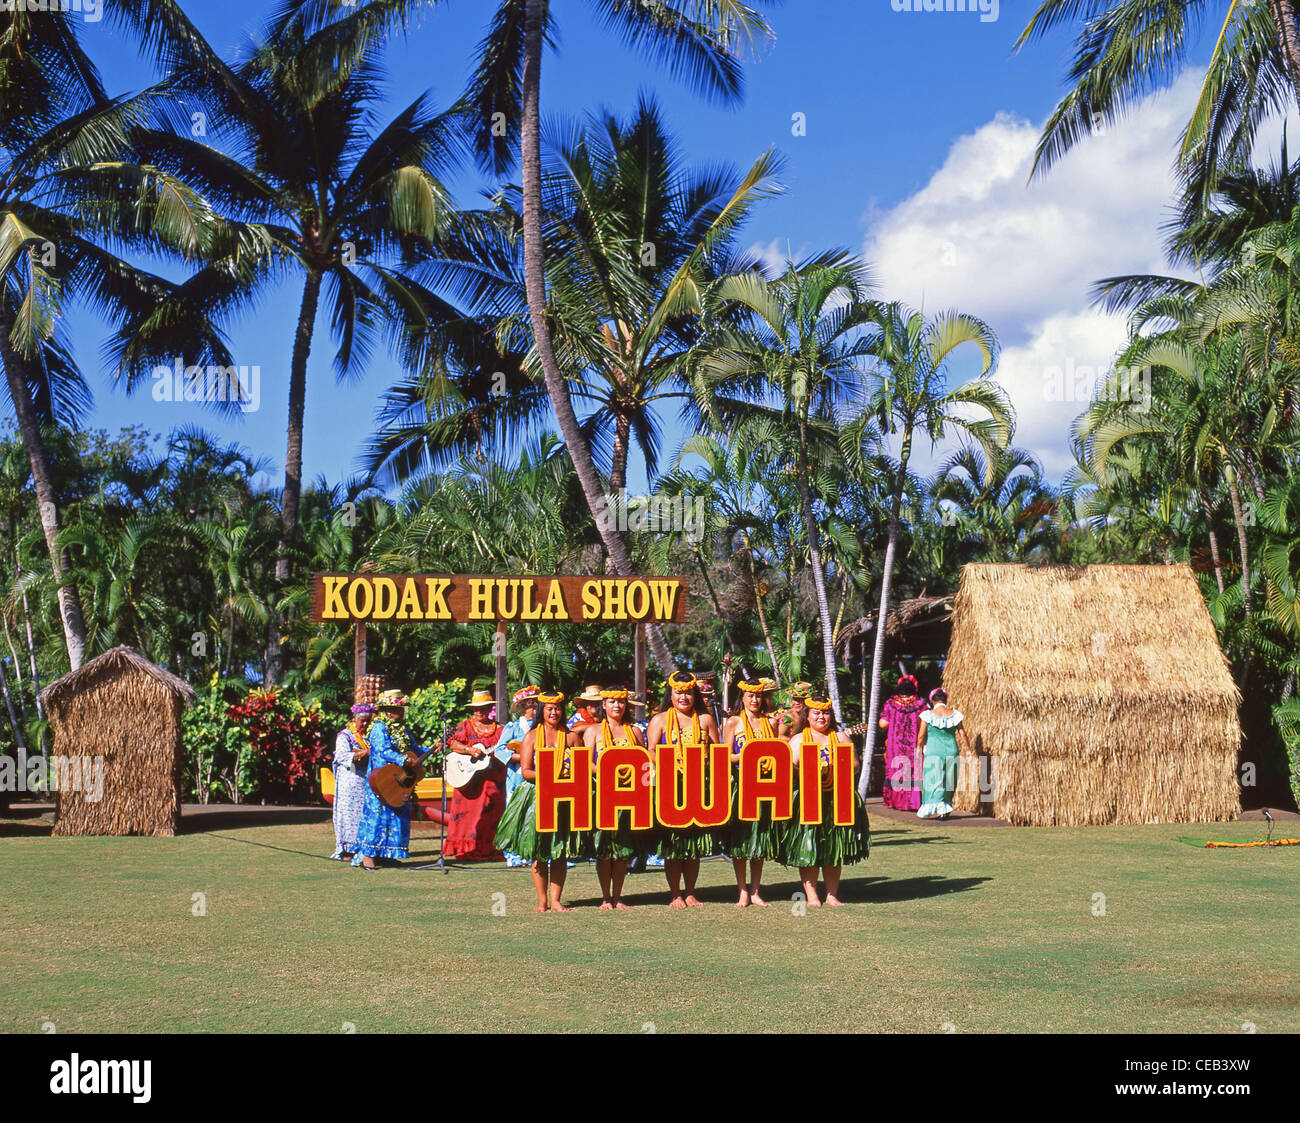 Hawaiianische Tänzer, Kodak Hula Show, Honolulu, Oahu, Hawaii, Vereinigte Staaten von Amerika Stockfoto